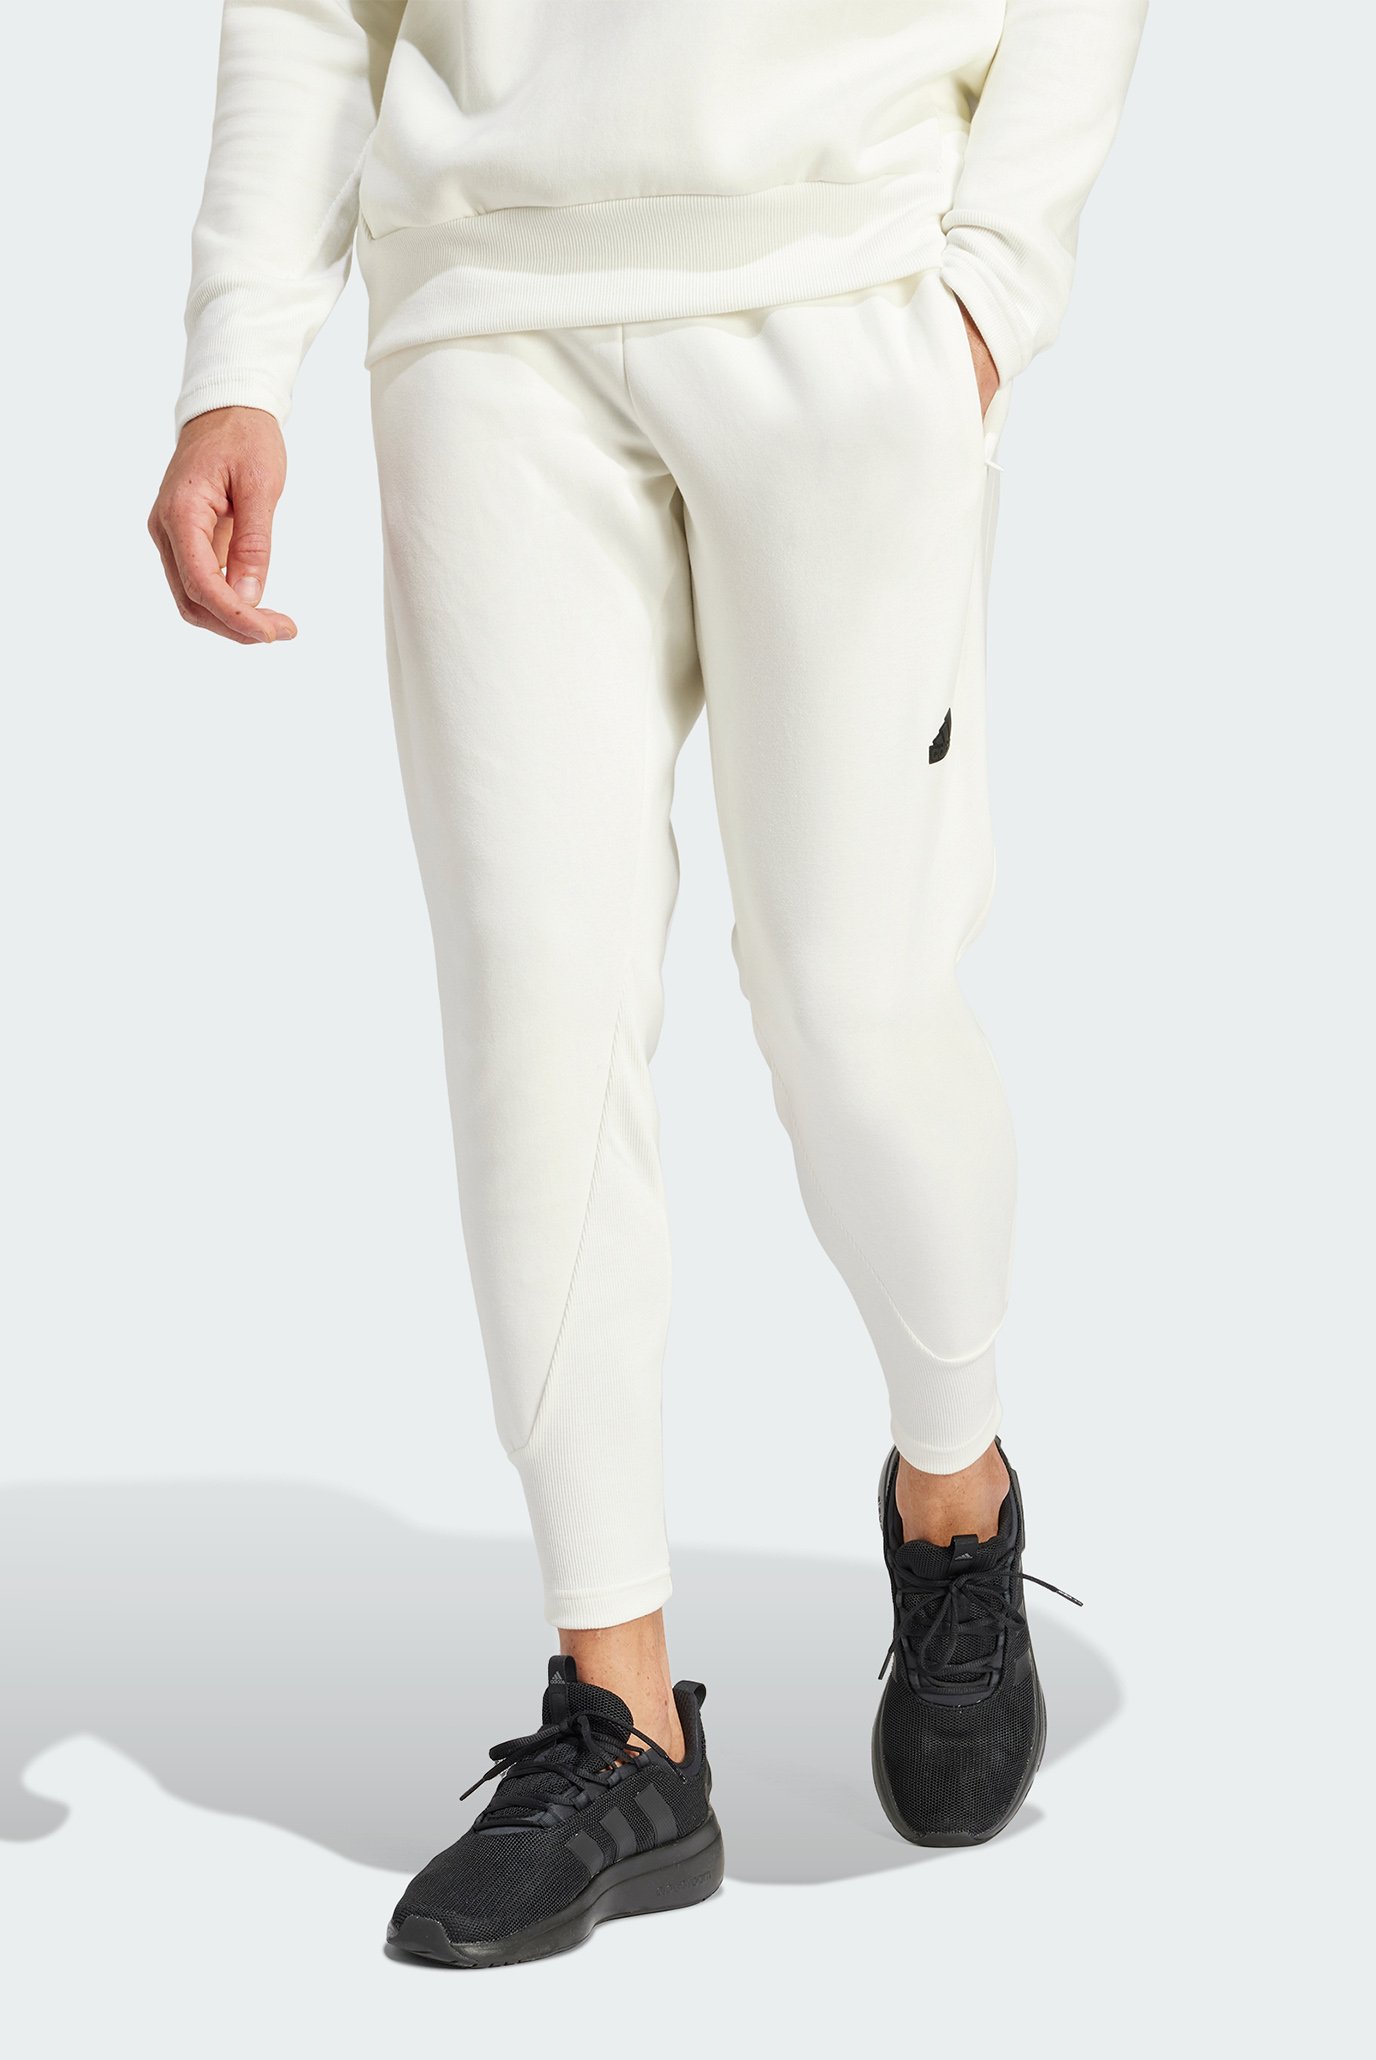 Чоловічі білі спортивні штани Z.N.E. Premium 1